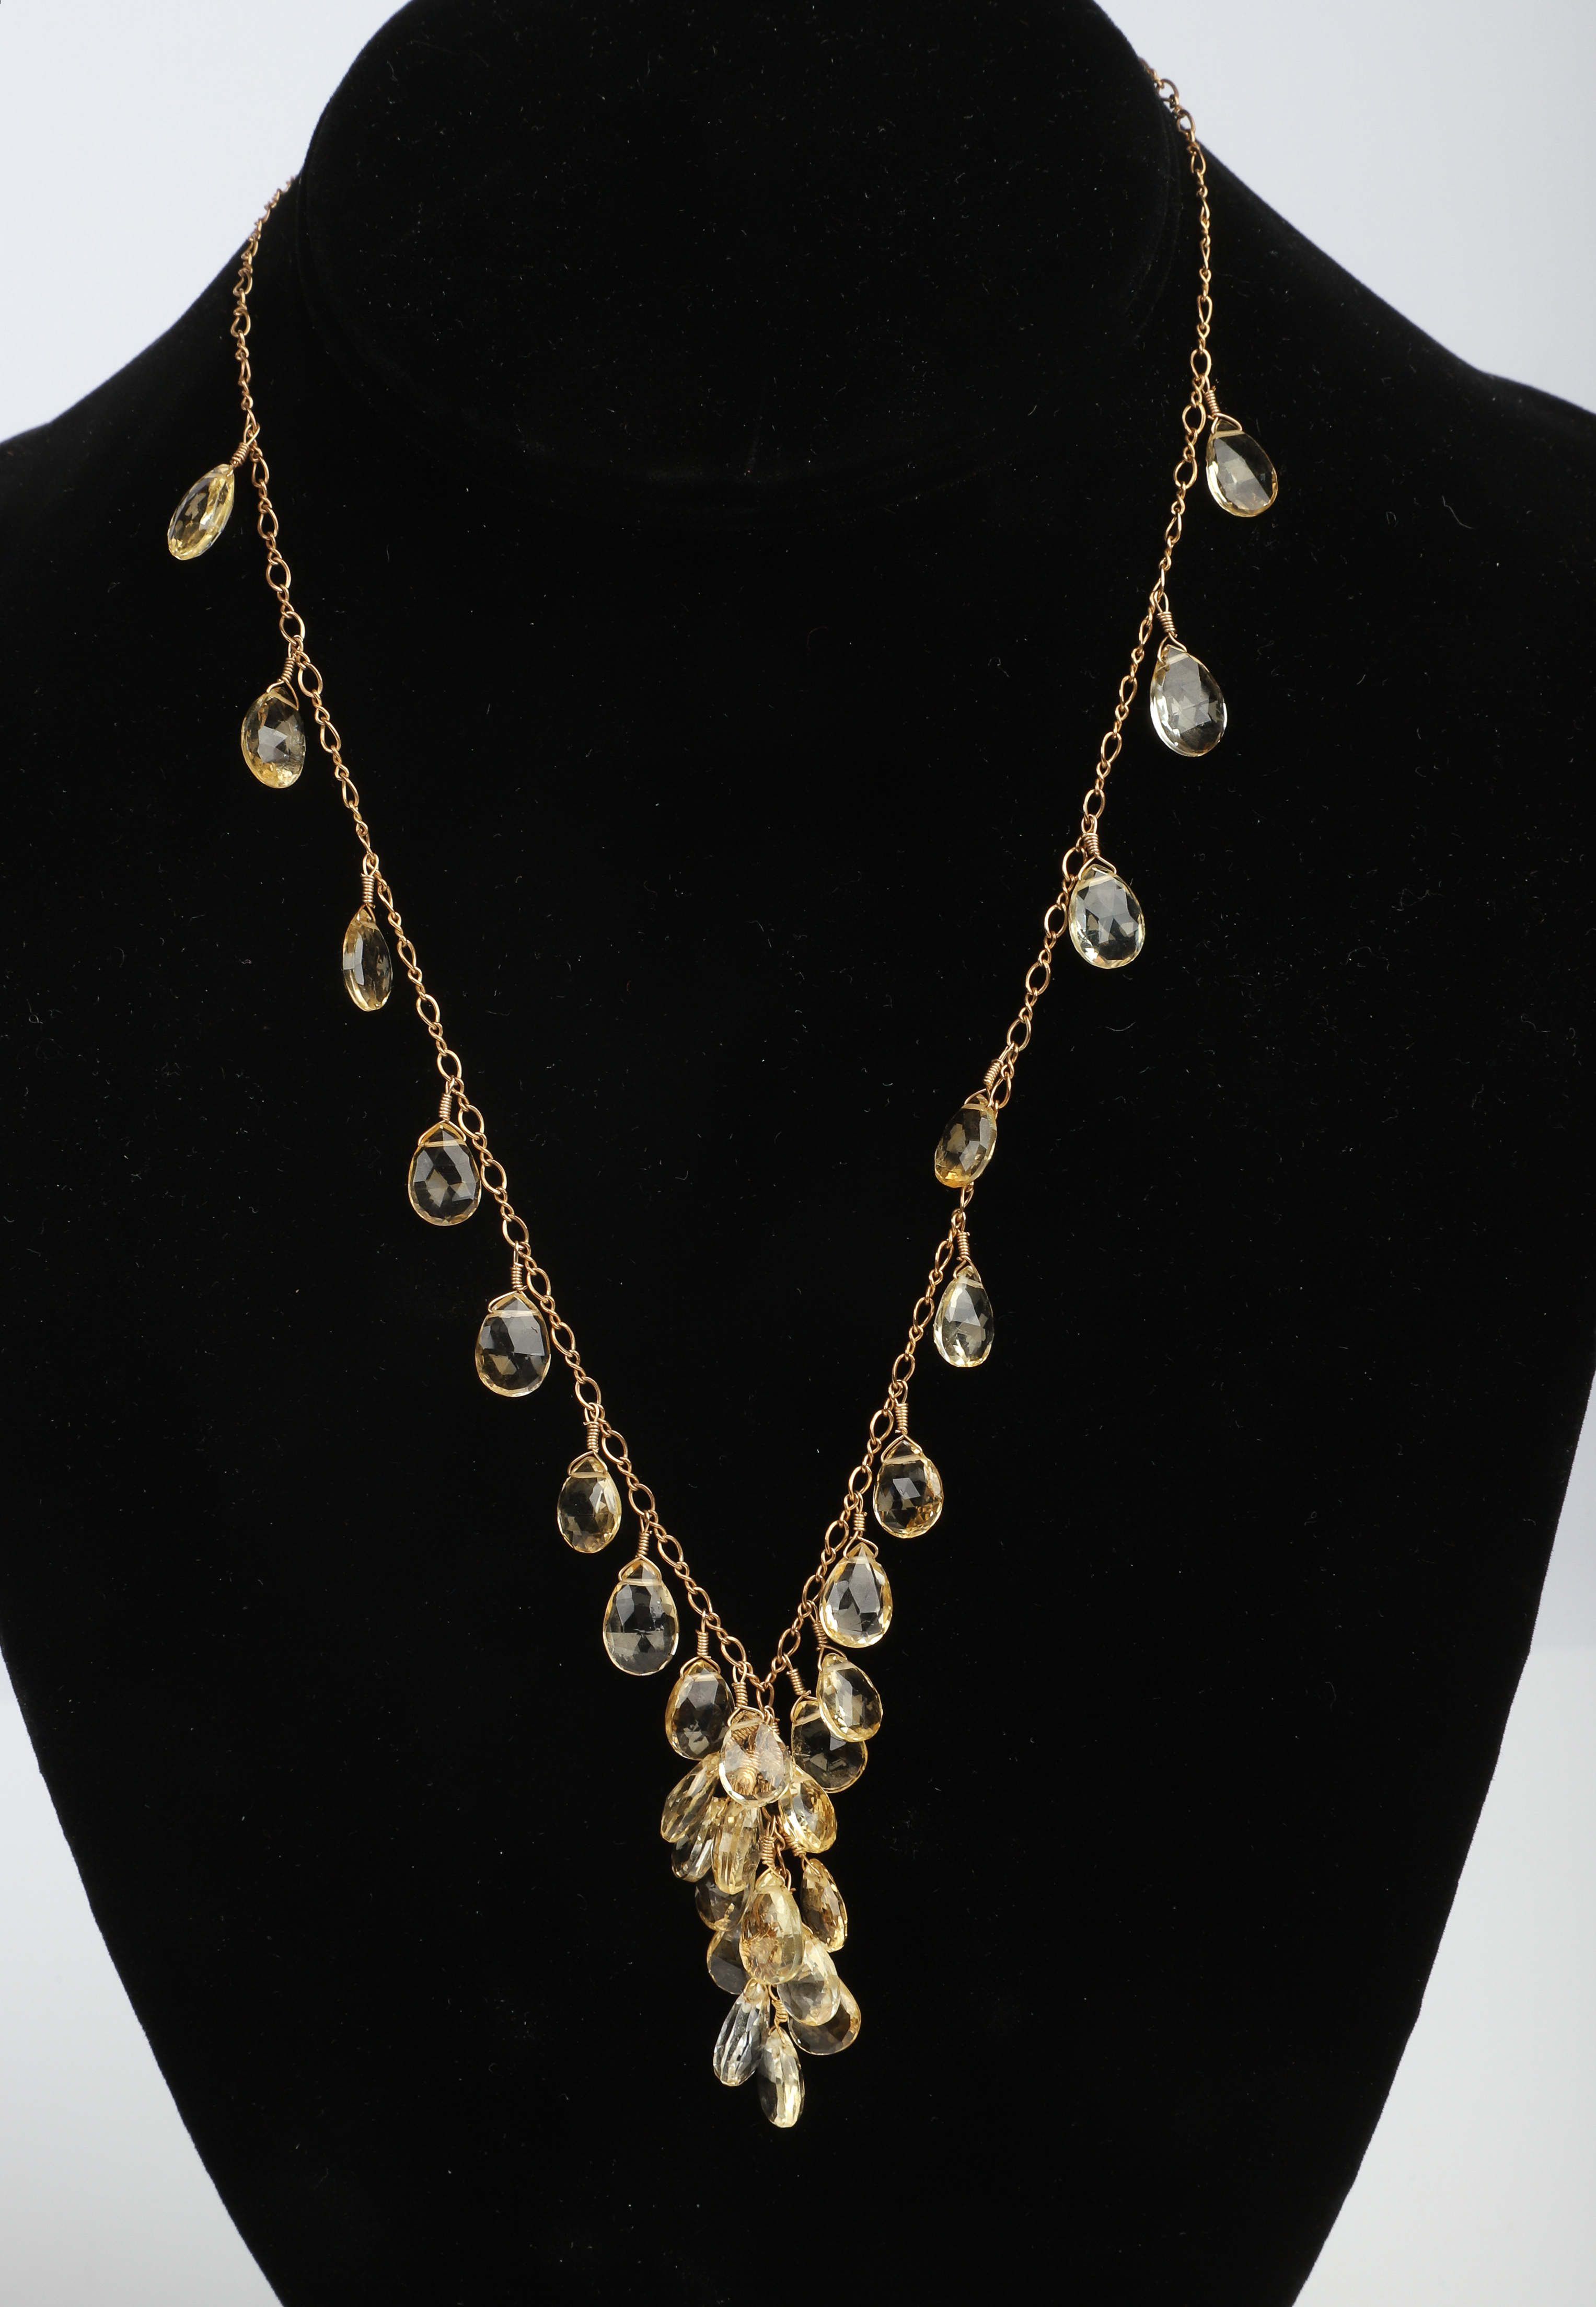 Citrine cluster necklace, on gold filled